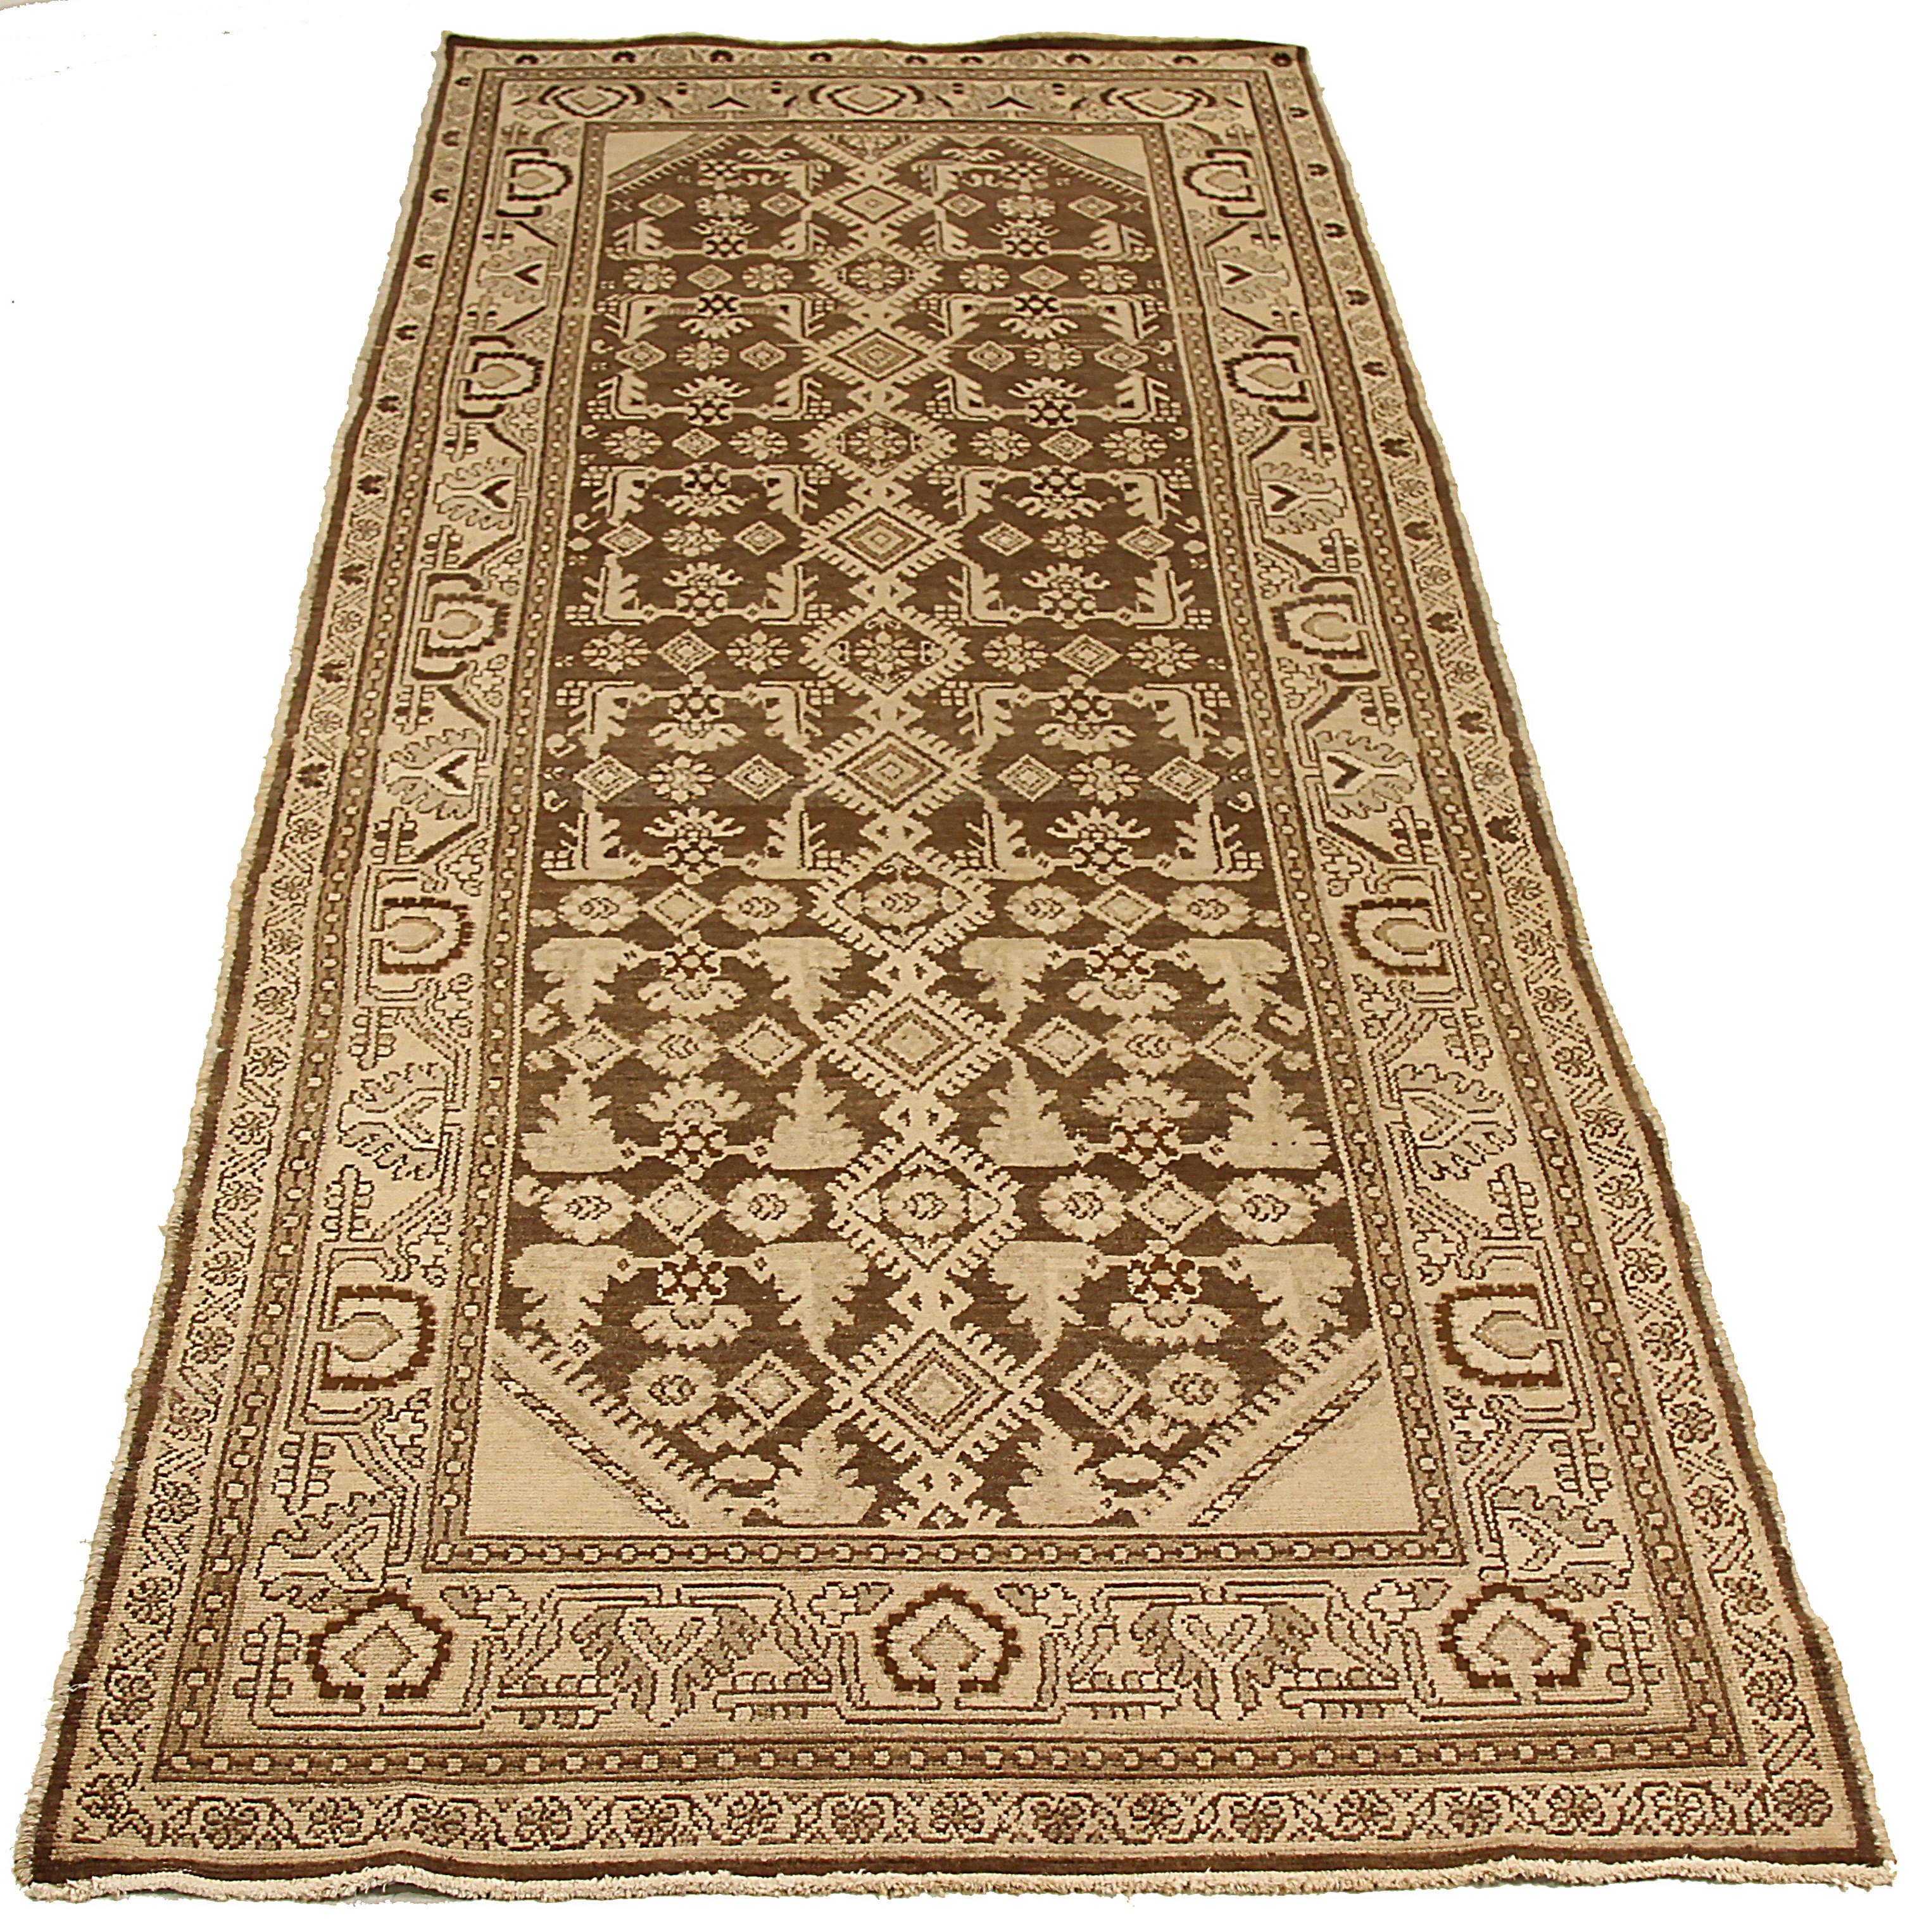 Antiker persischer Teppich, handgewebt aus feinster Schafswolle. Es ist mit natürlichen pflanzlichen Farbstoffen gefärbt, die für Menschen und Haustiere sicher sind. Es ist ein traditionelles Malayer-Muster mit Stammesmotiven auf einem braunen Feld.